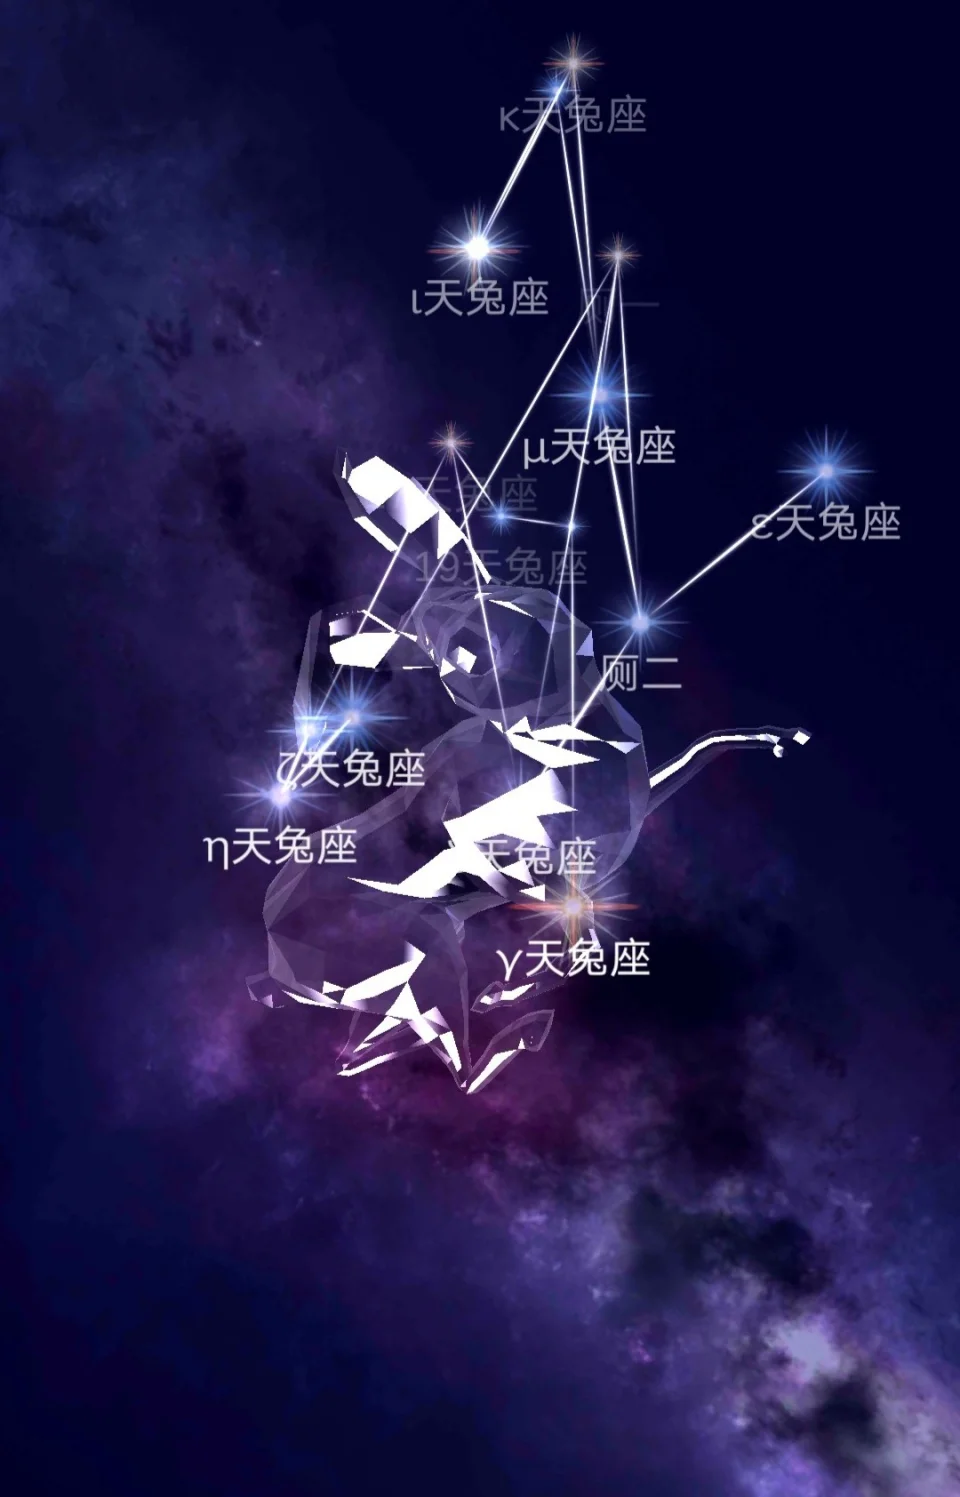 每个星座中的主星，连接起来，像这个星座名字中的动物或物品。星座符号是星座与人之间的图腾，诠释星座的意义和传递星座的能量。